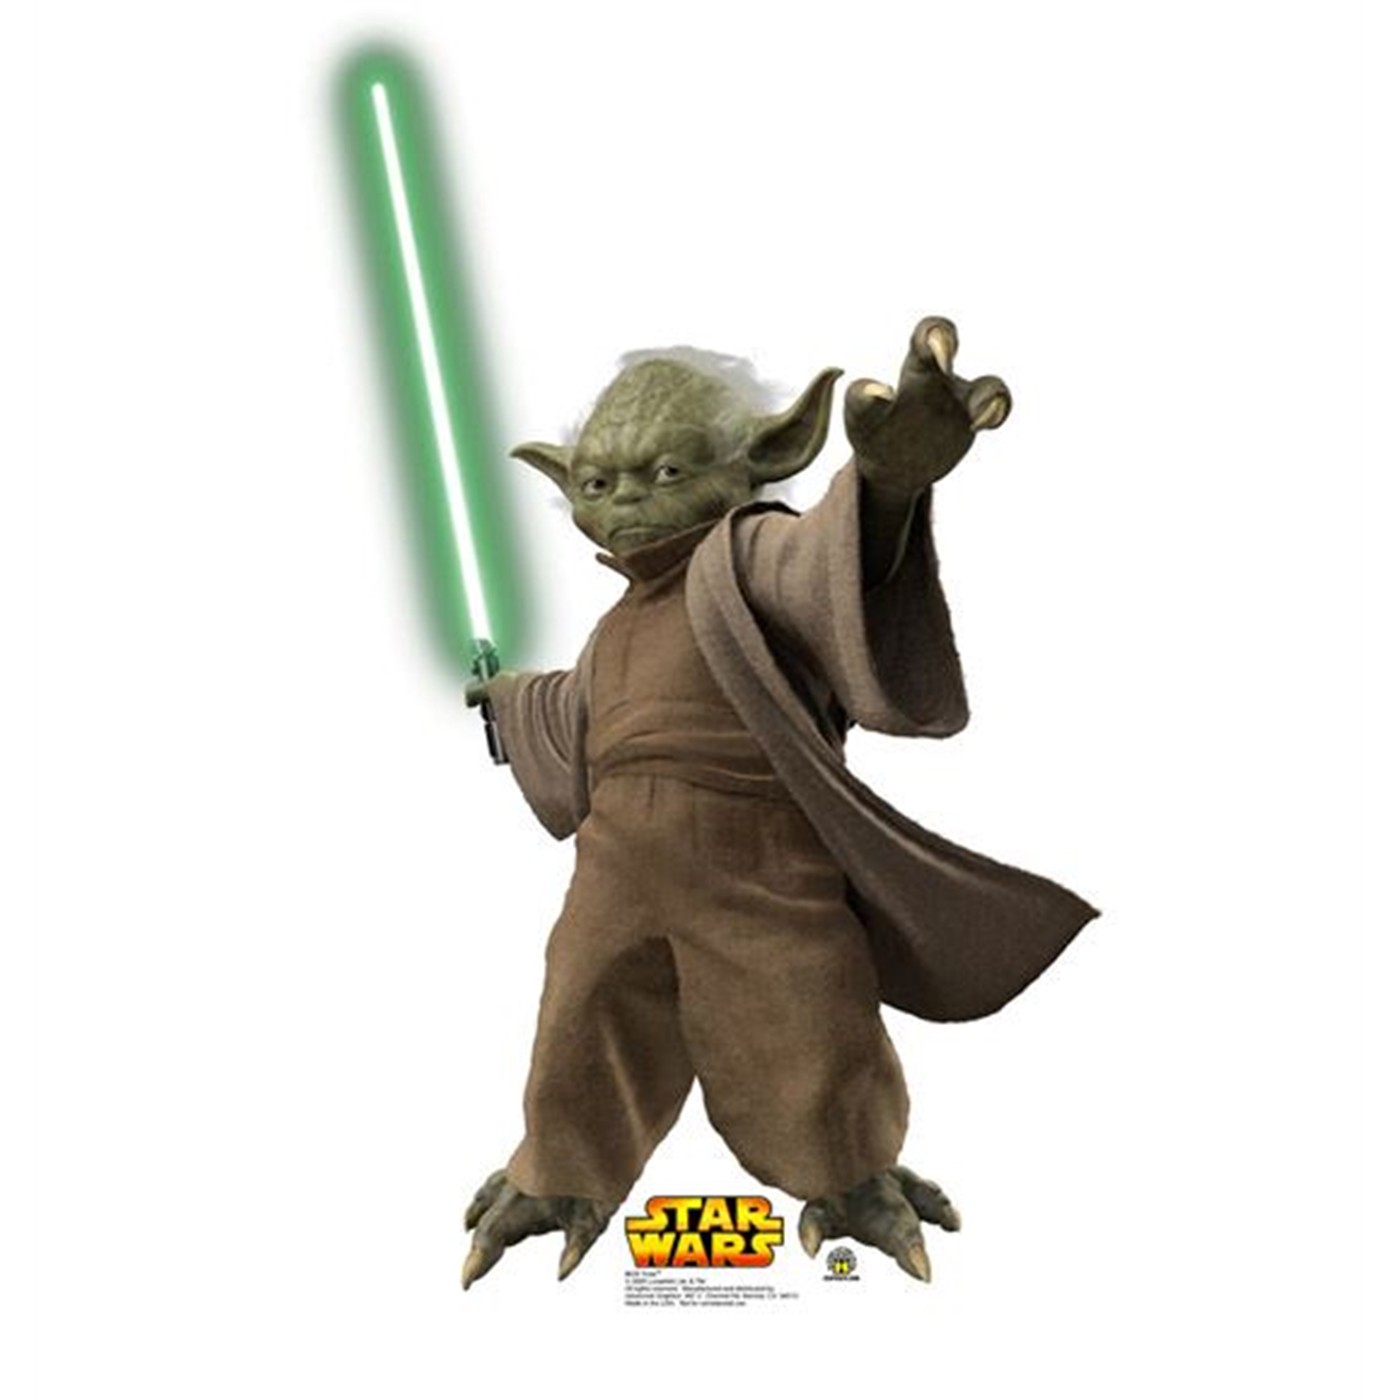 Star Wars Yoda Cardboard Cutout